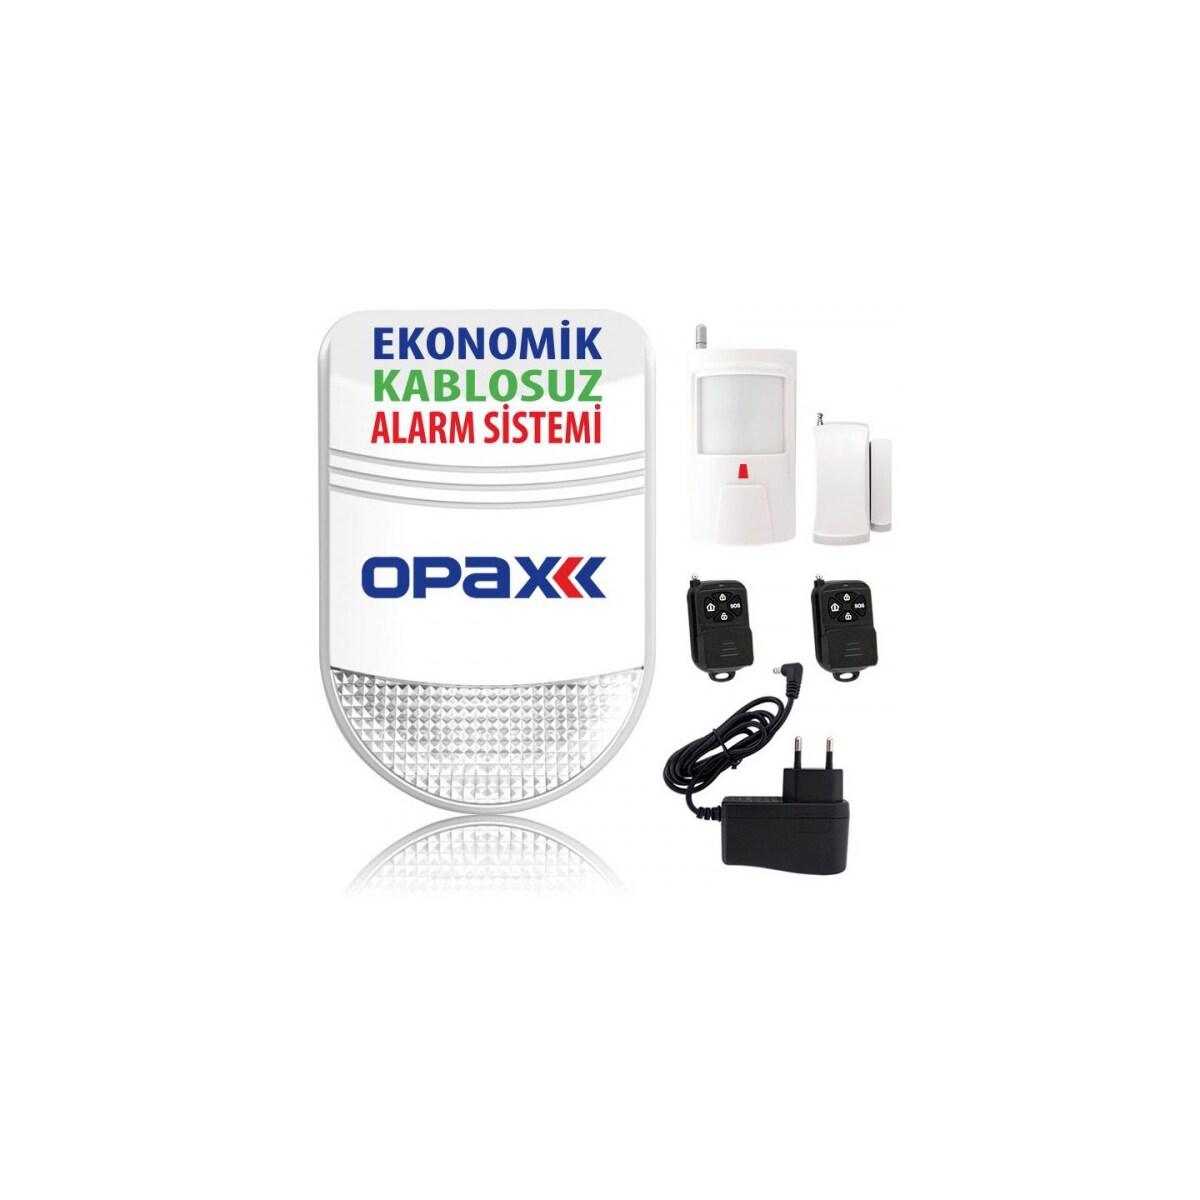 Opax Bgr-06 Ekonomik Kablosuz Alarm Sistemi (Siren+Pır+Manyetik)